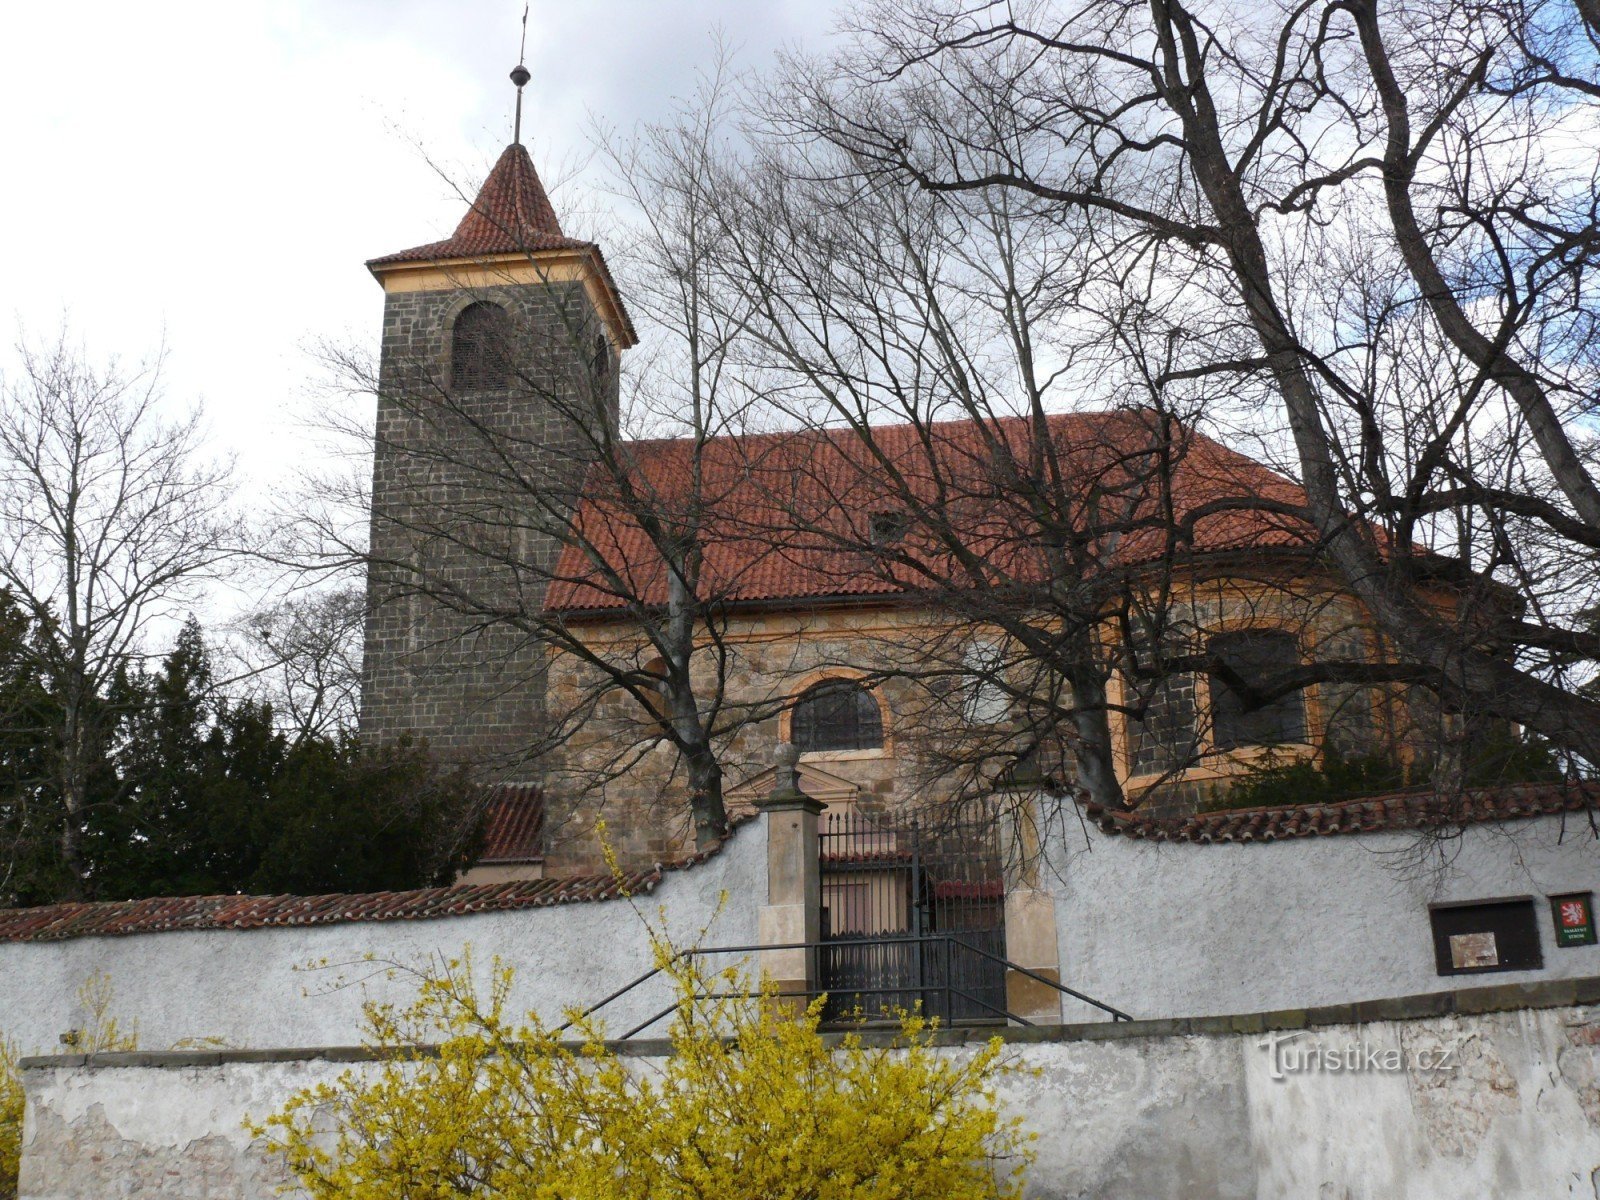 Čelákovice - Church of the Assumption of the Virgin Mary